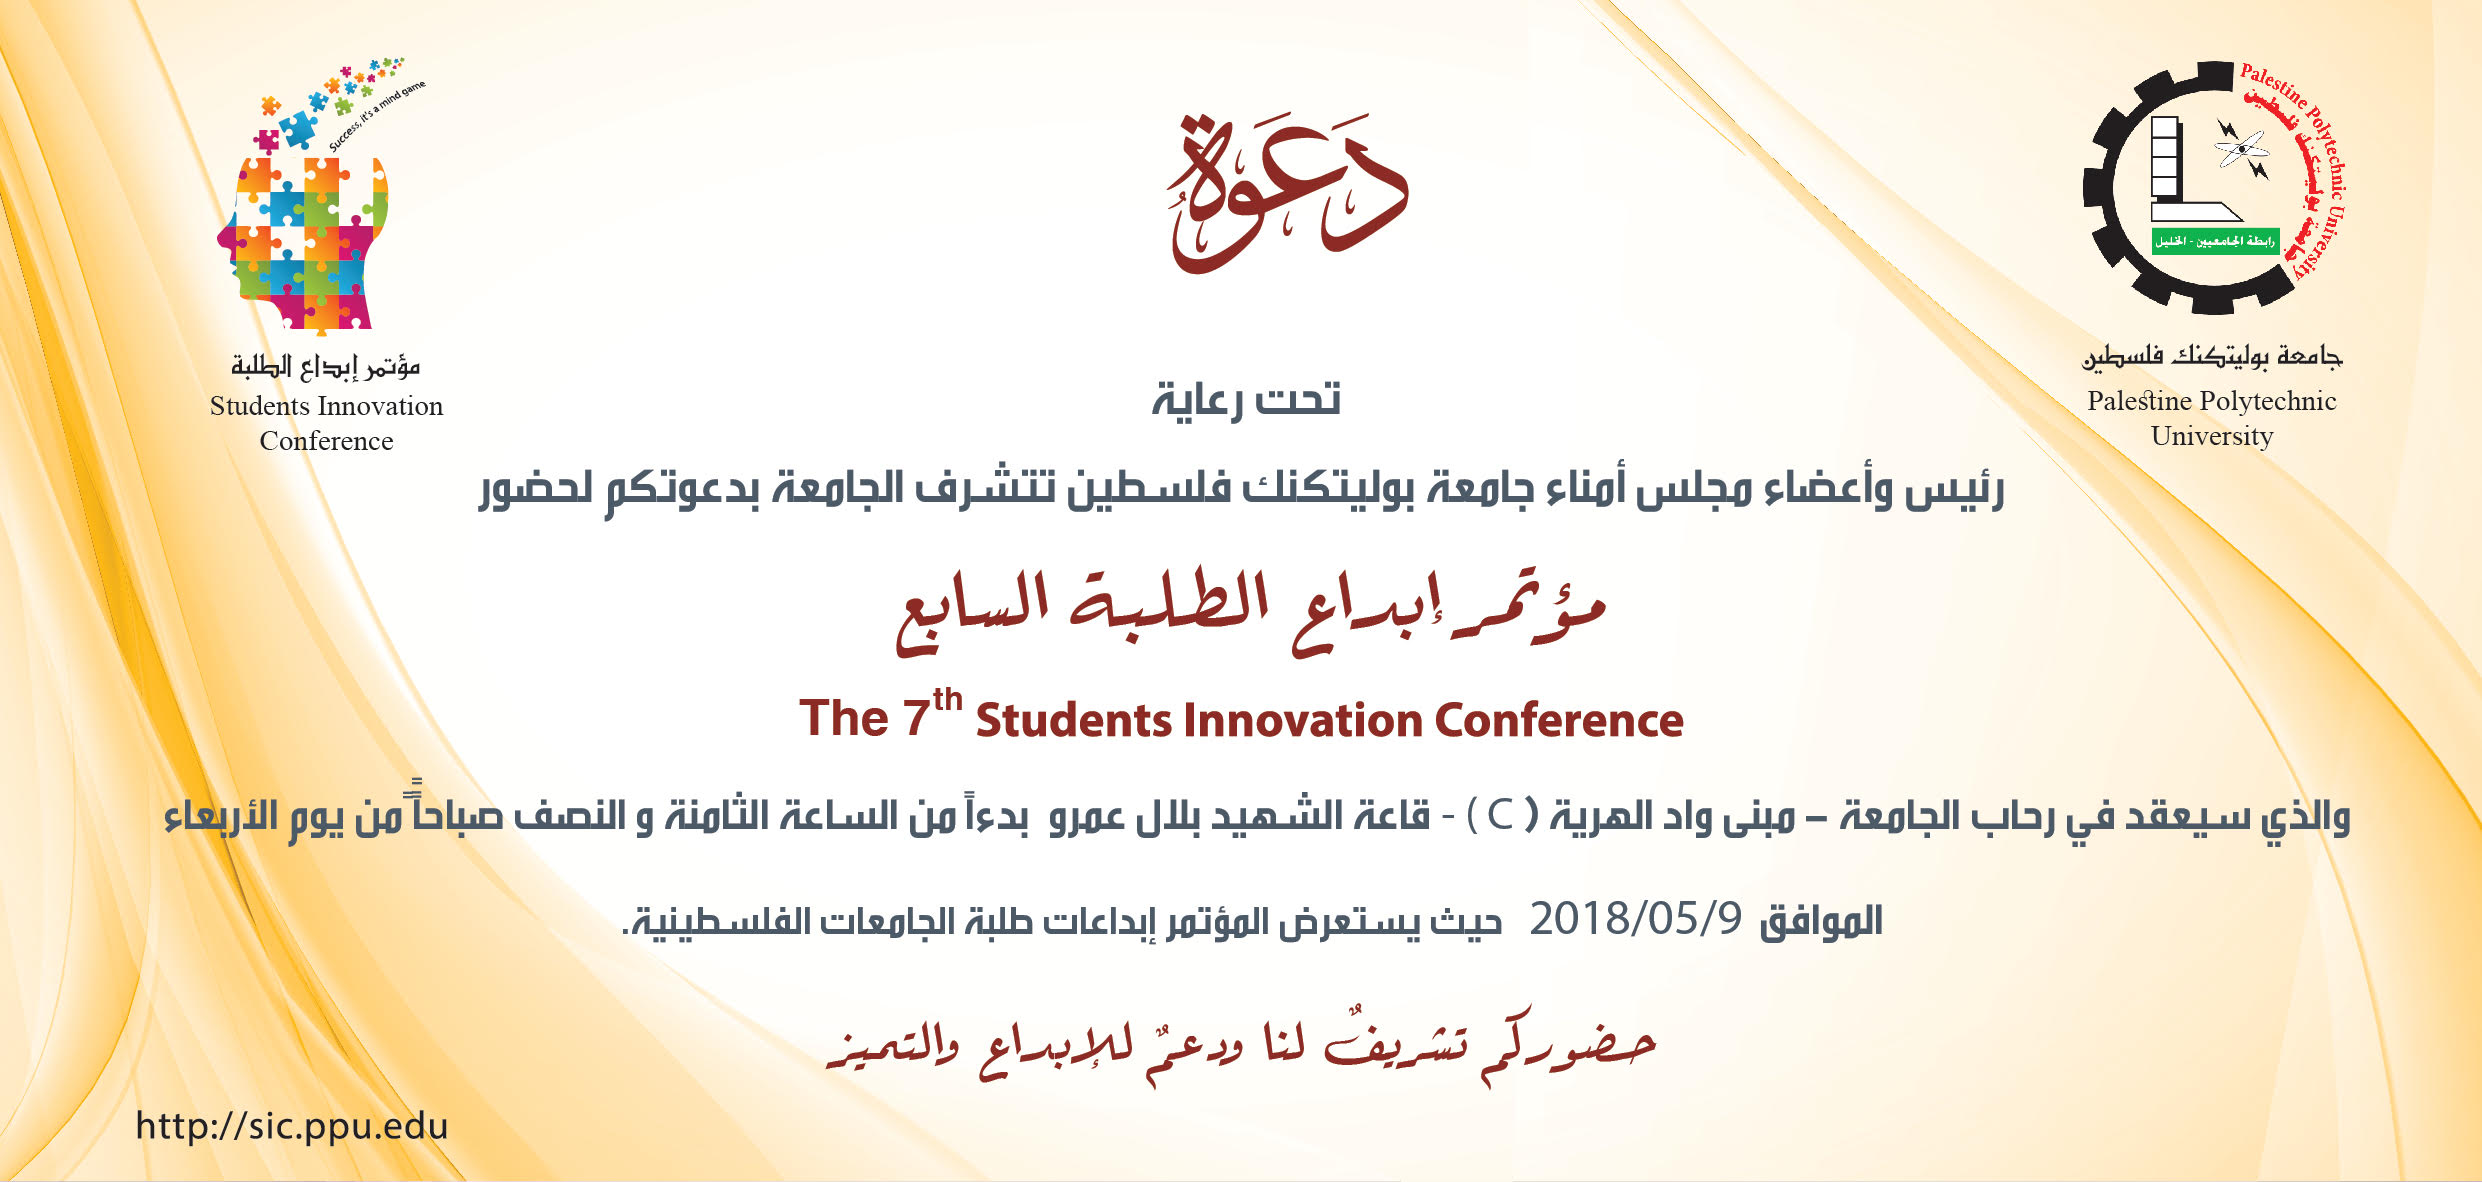 Palestine Polytechnic University (PPU) - دعوة لحضور مؤتمر ابداع الطلبة السابع في رحاب جامعة بوليتكنك فلسطين